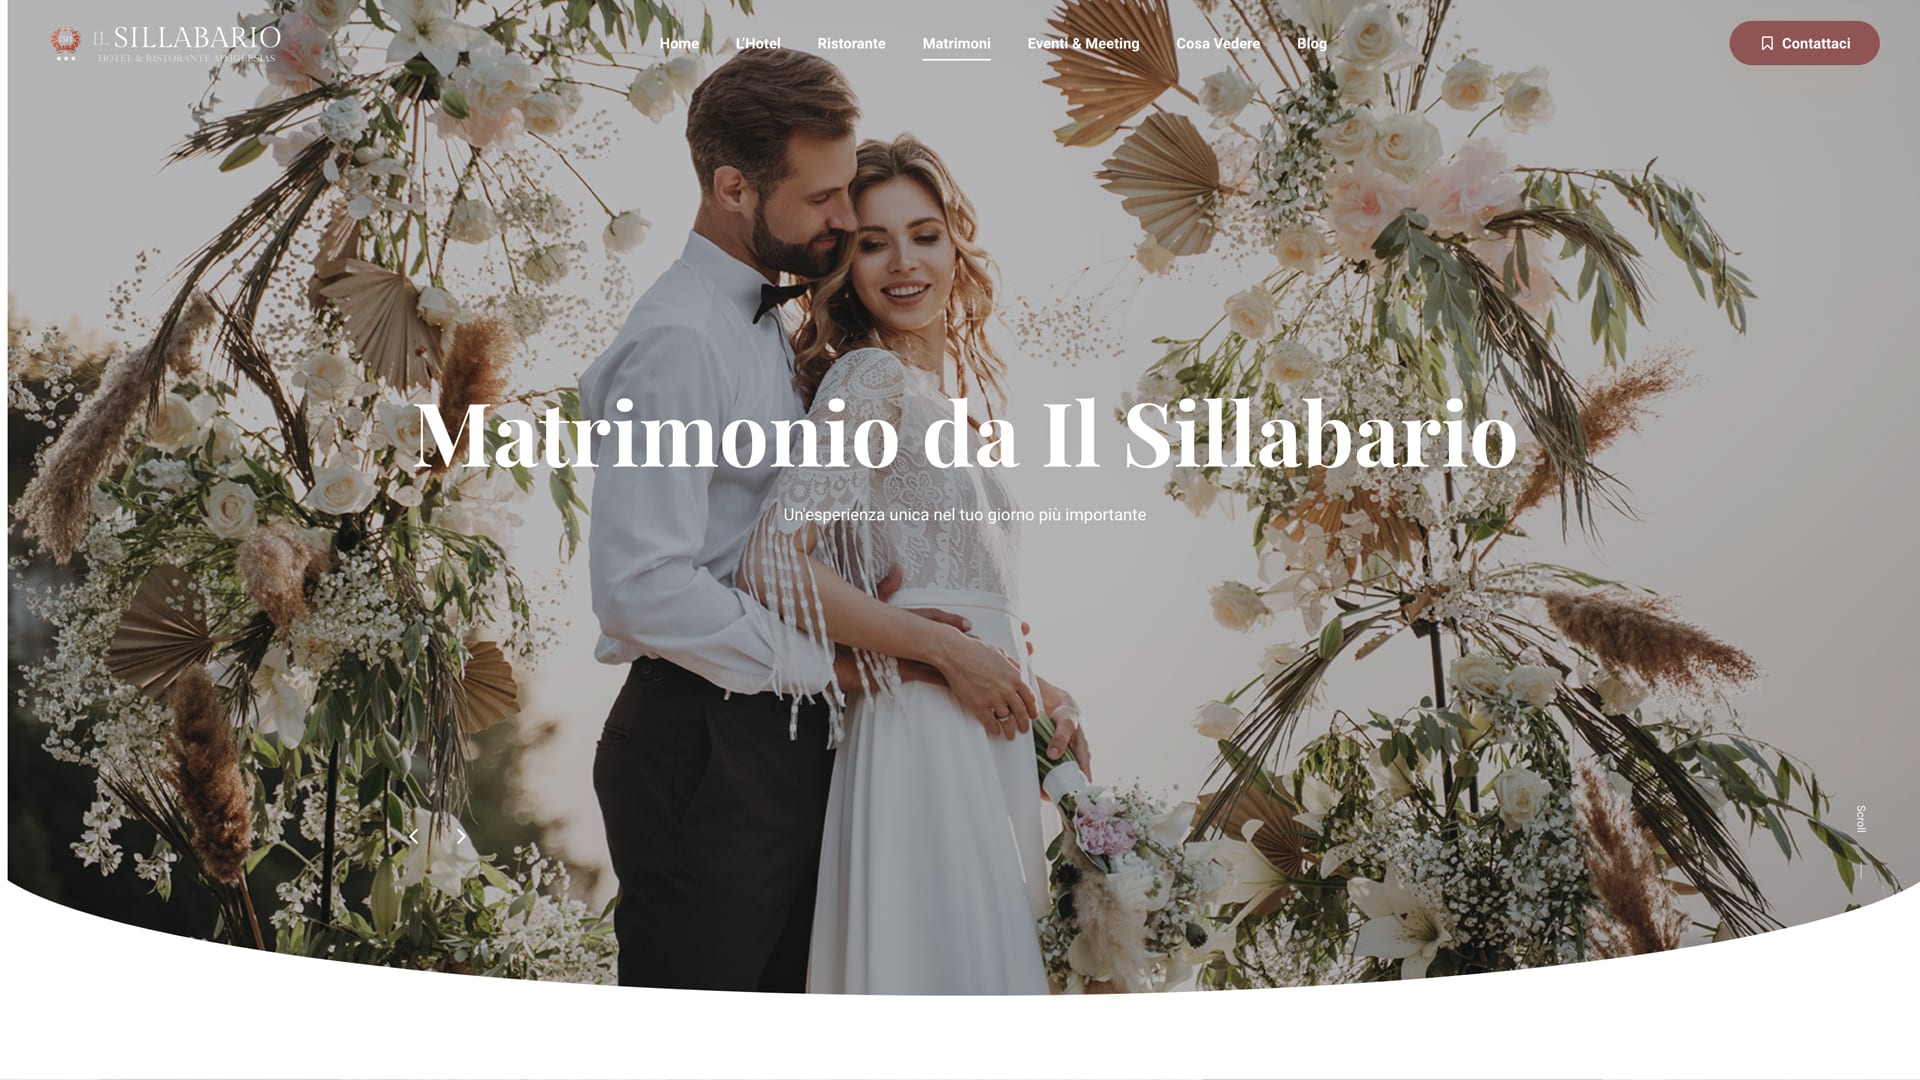 Realizzazione siti web per matrimoni sardegna - Il sillabario